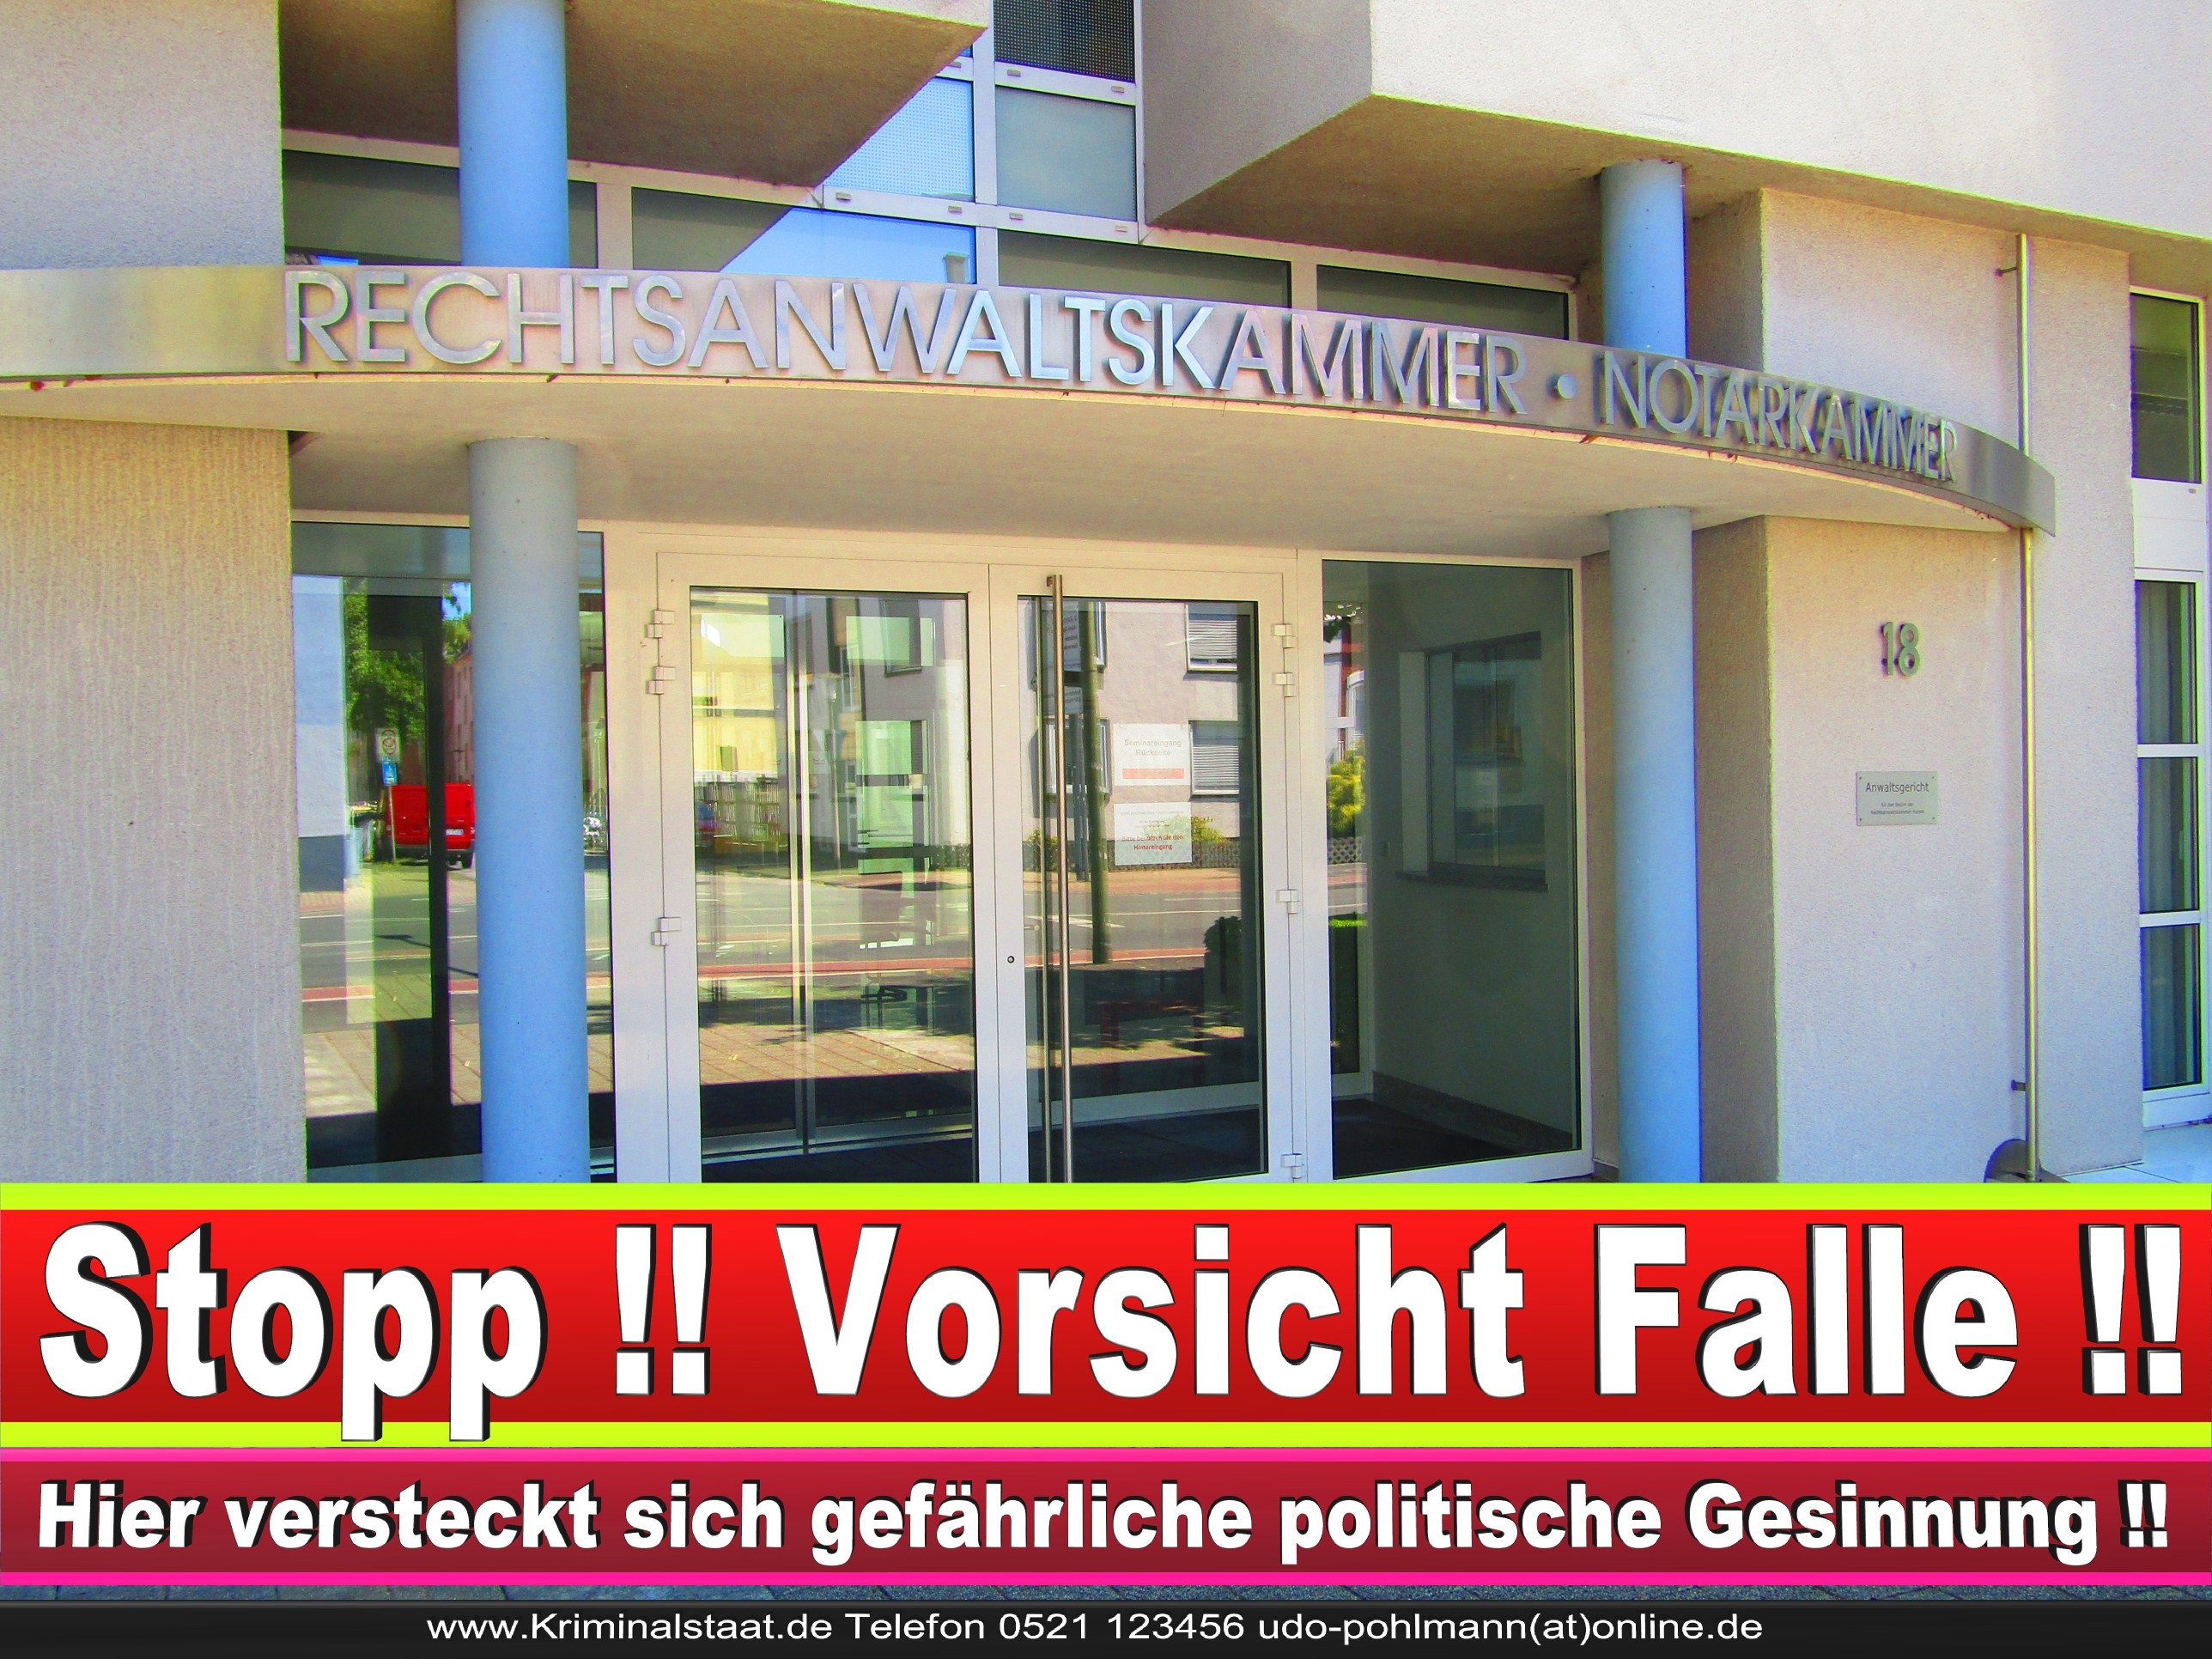 Rechtsanwaltskammer Hamm NRW Justizminister Rechtsanwalt Notar Vermögensverfall Urteil Rechtsprechung CDU SPD FDP Berufsordnung Rechtsanwälte Rechtsprechung (8)